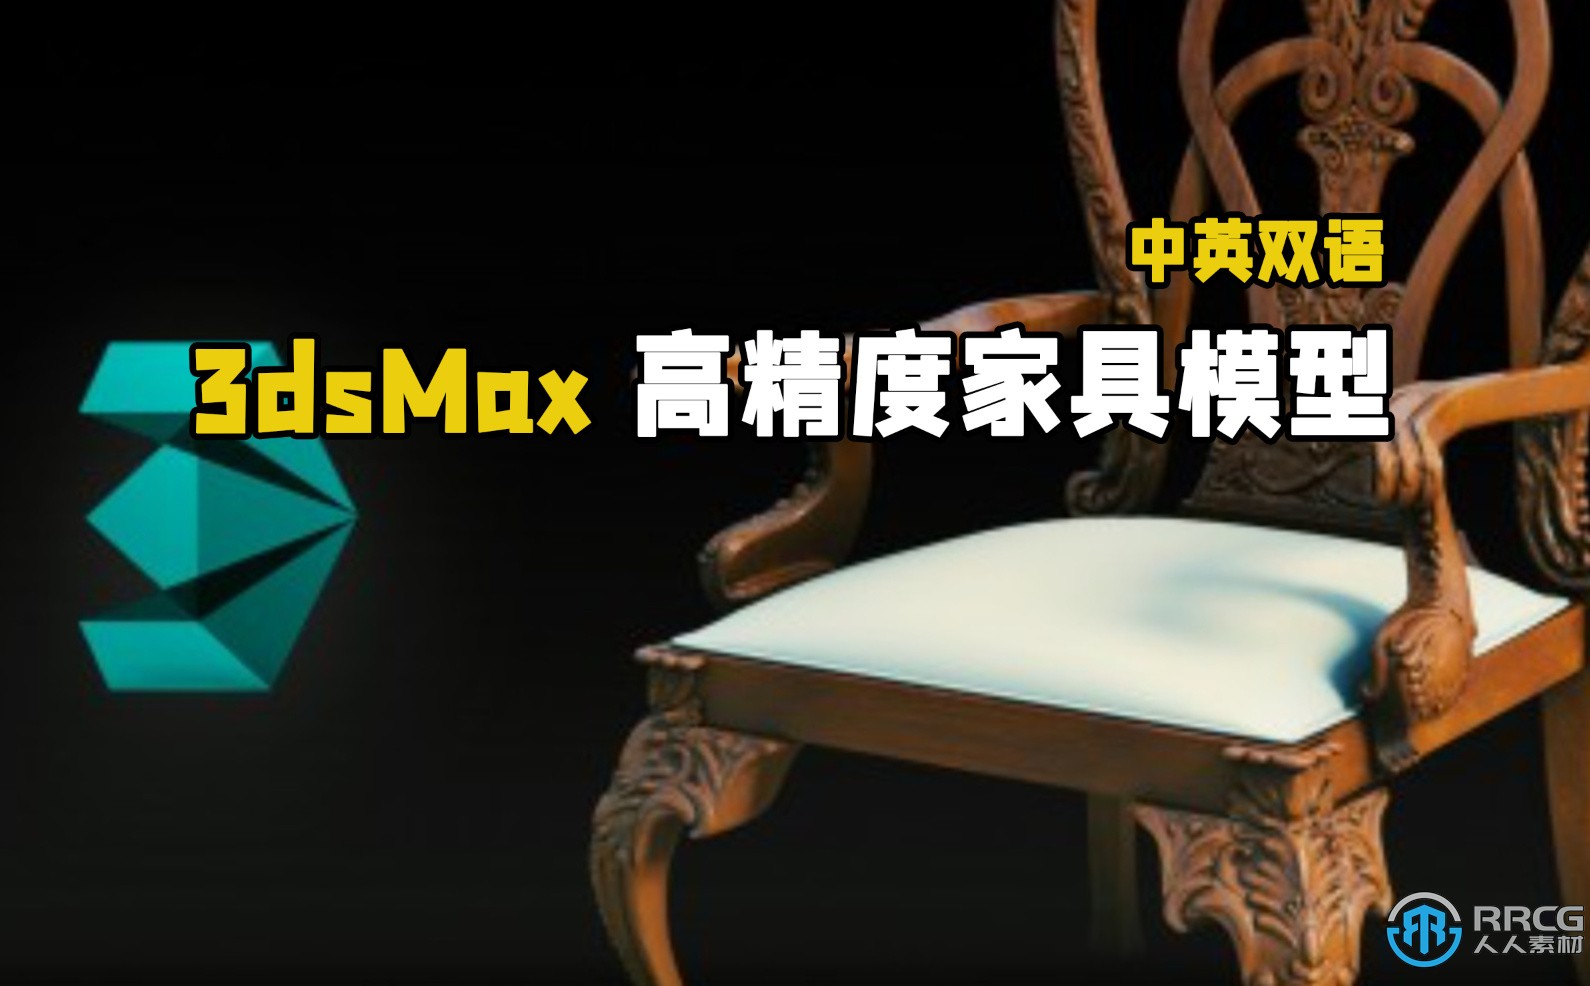 【中文字幕】3dsMax高精度家具模型实例制作视频教程